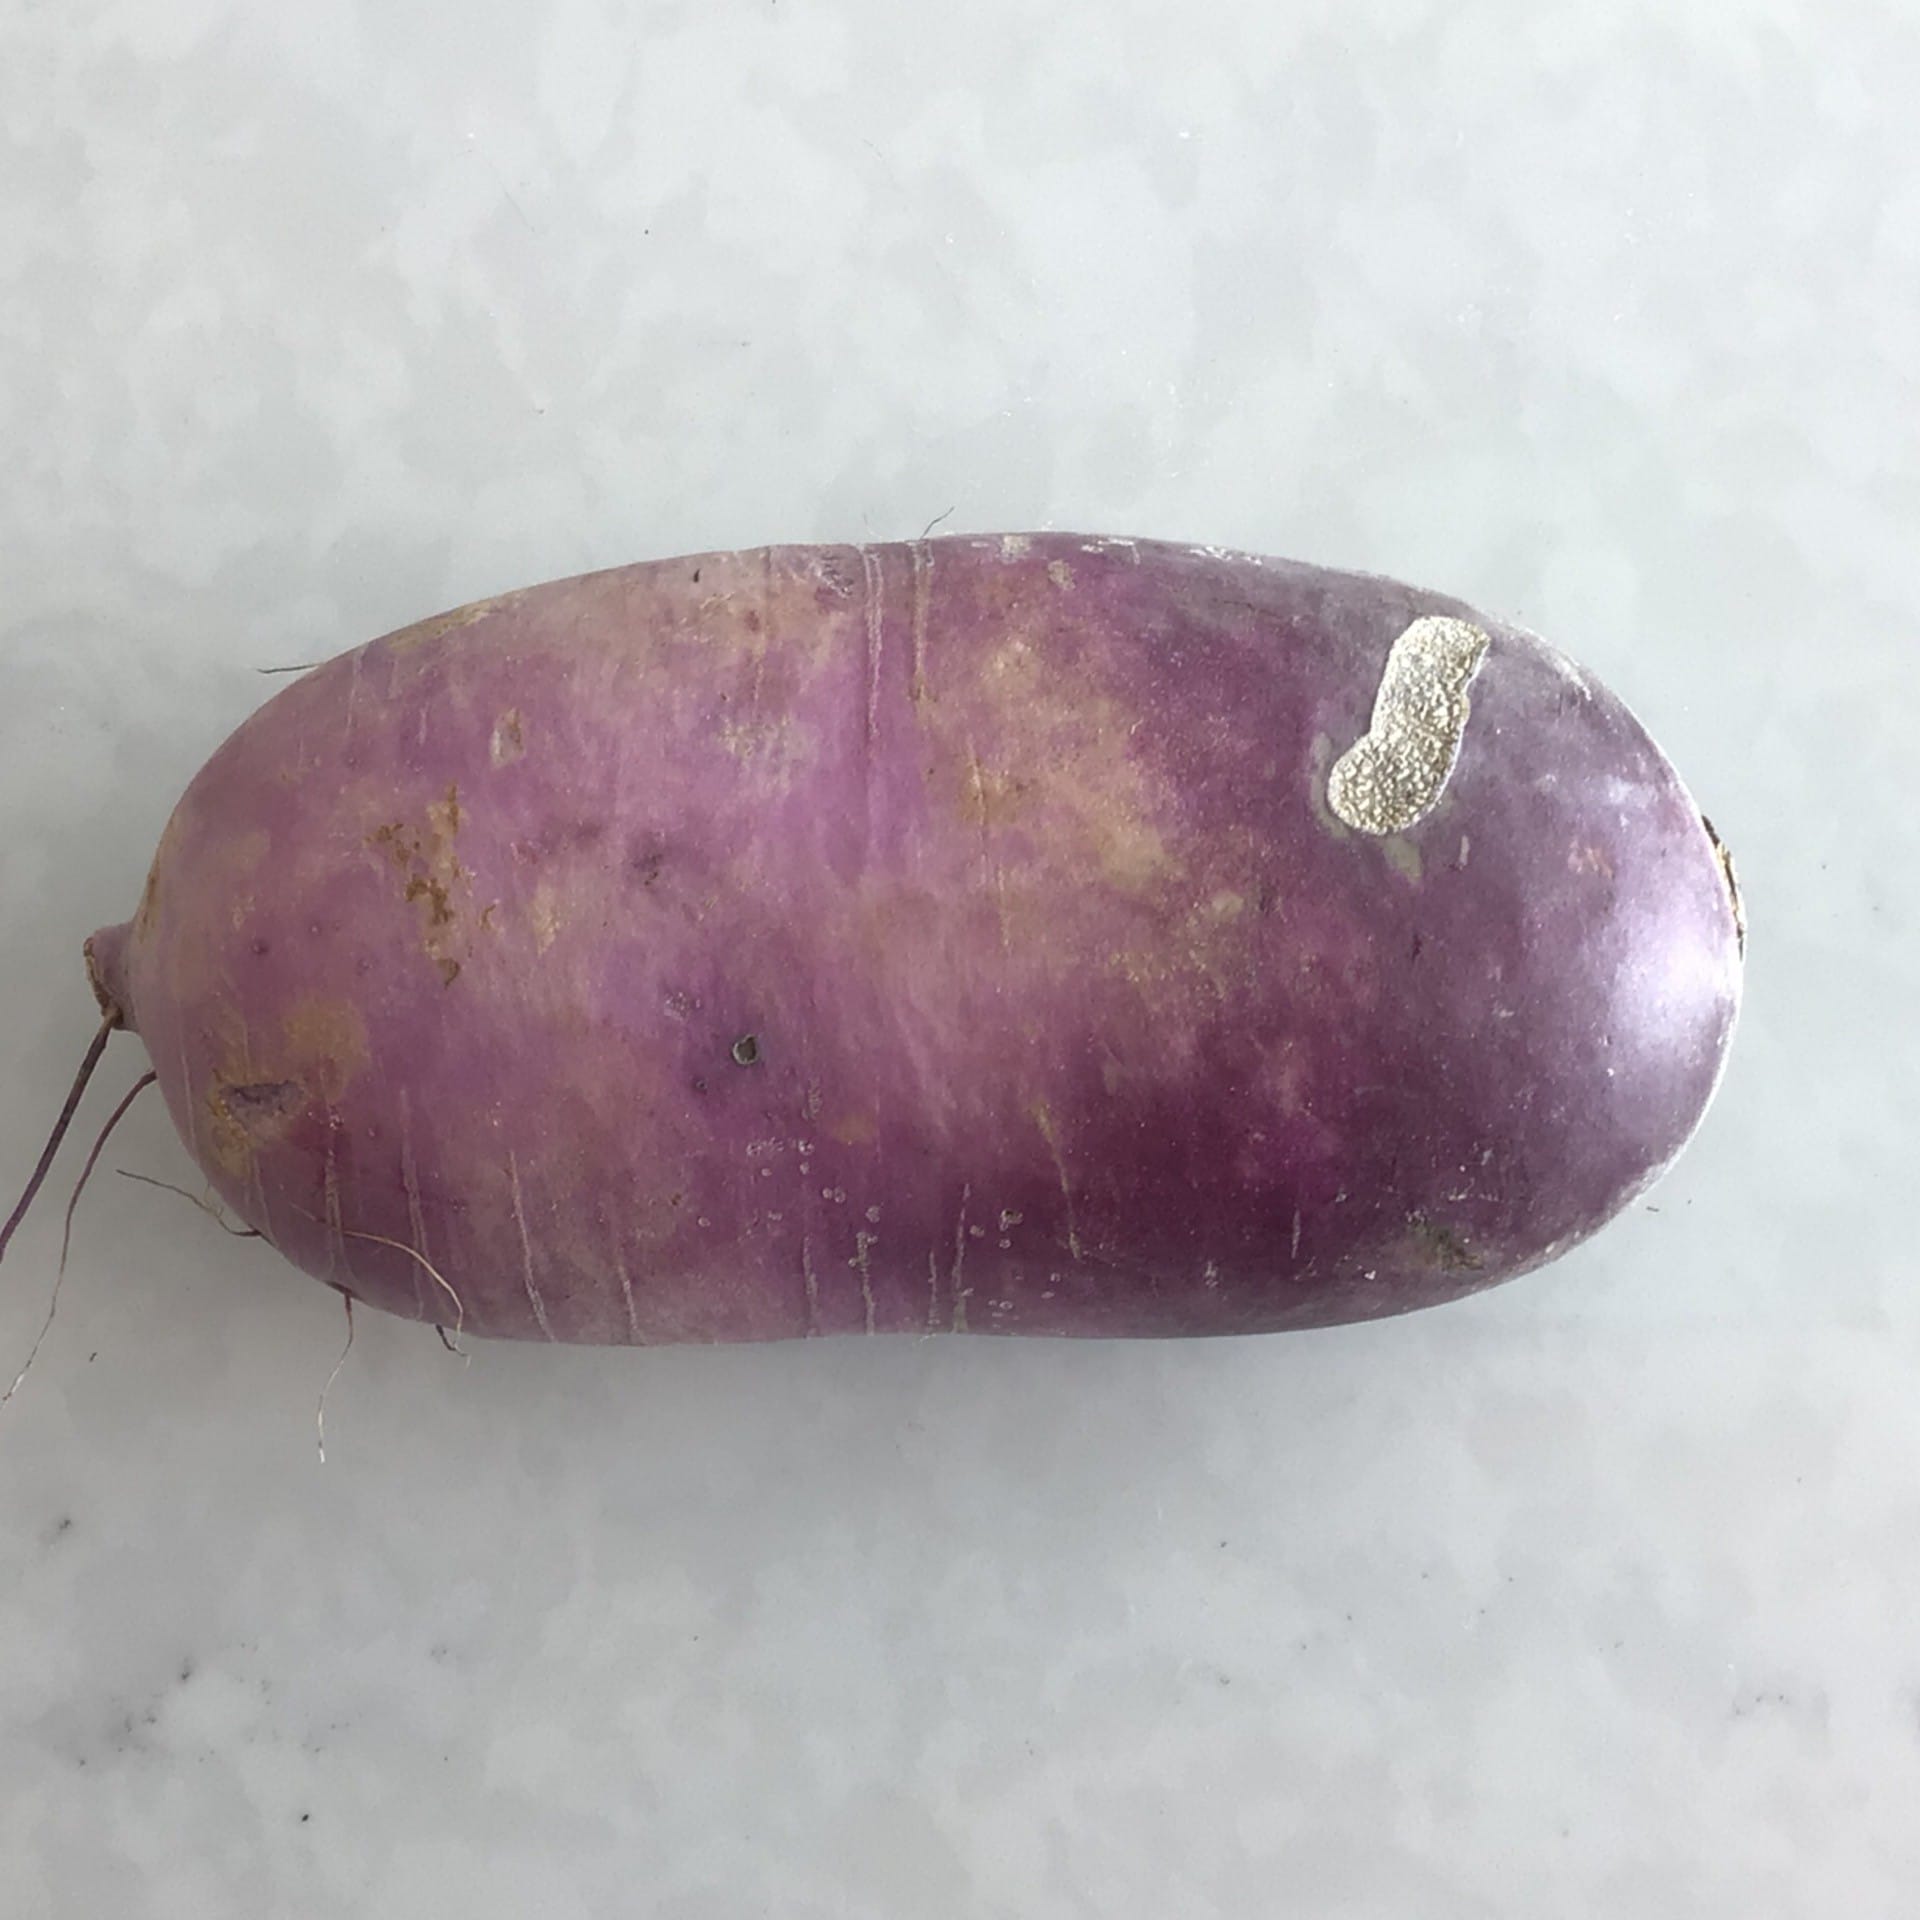 sold out purple daikon radish